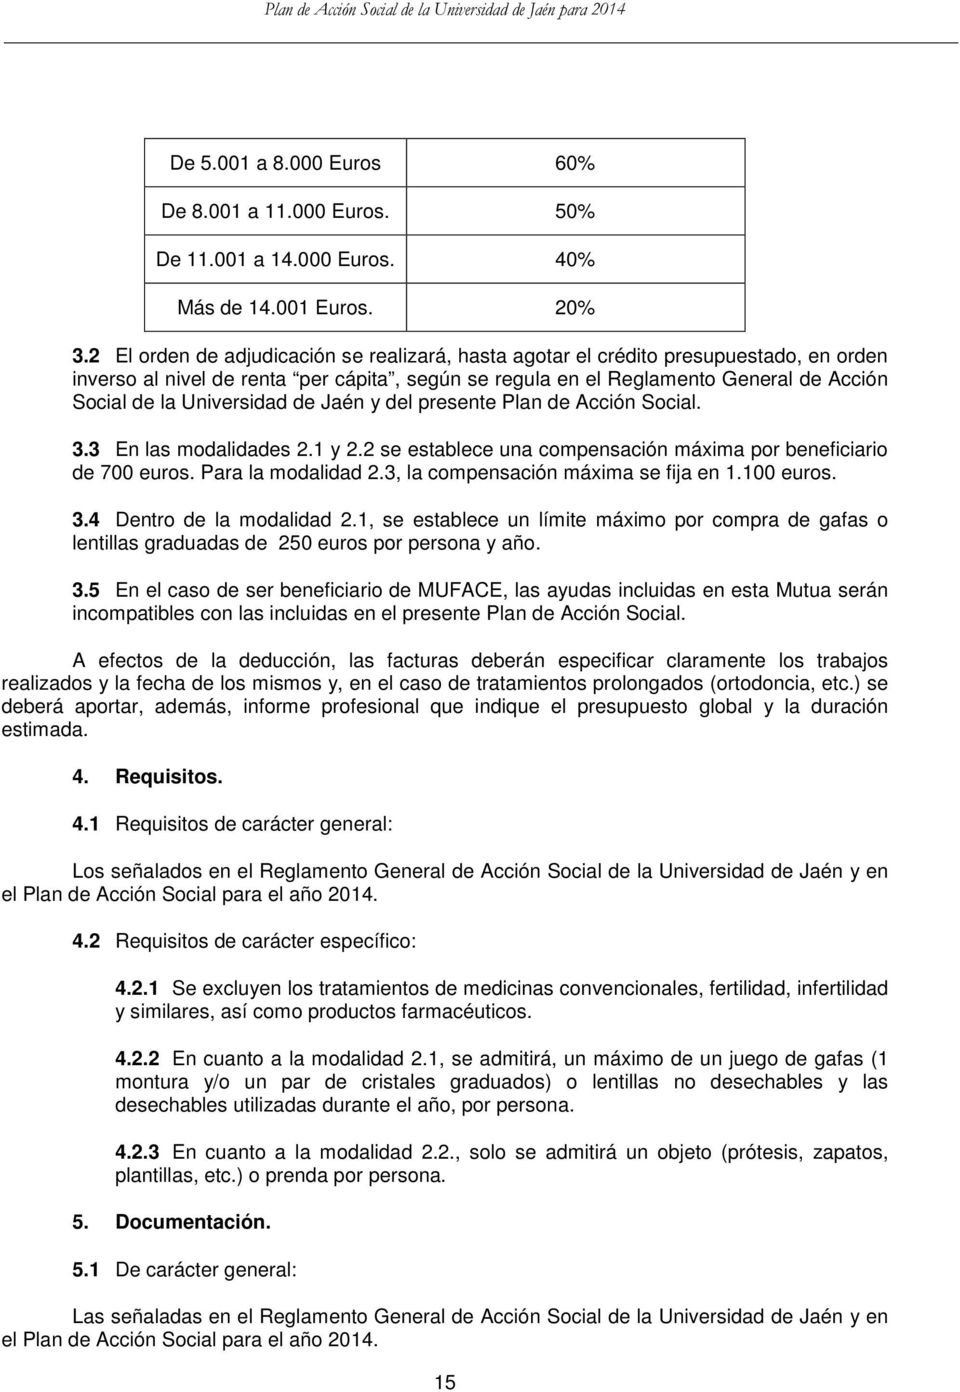 Universidad de Jaén y del presente Plan de Acción Social. 3.3 En las modalidades 2.1 y 2.2 se establece una compensación máxima por beneficiario de 700 euros. Para la modalidad 2.